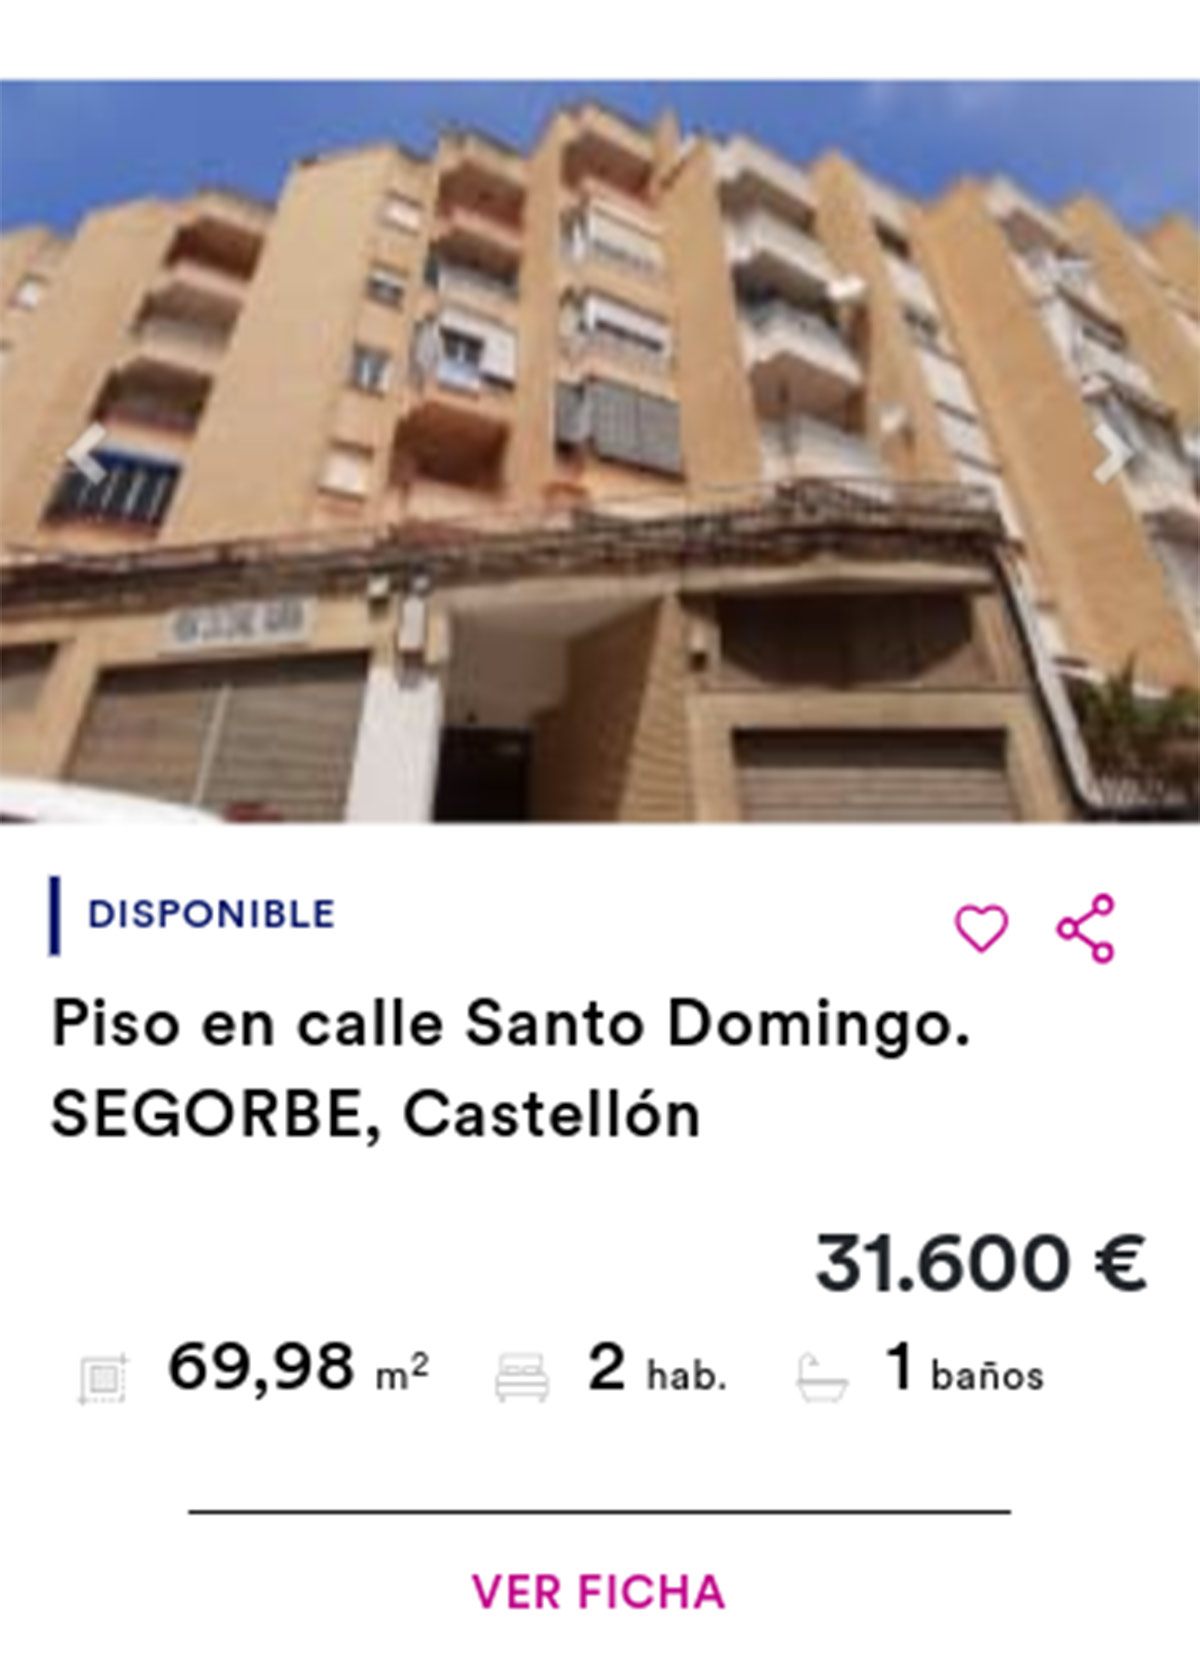 Piso de Cajamar por 31.600 euros